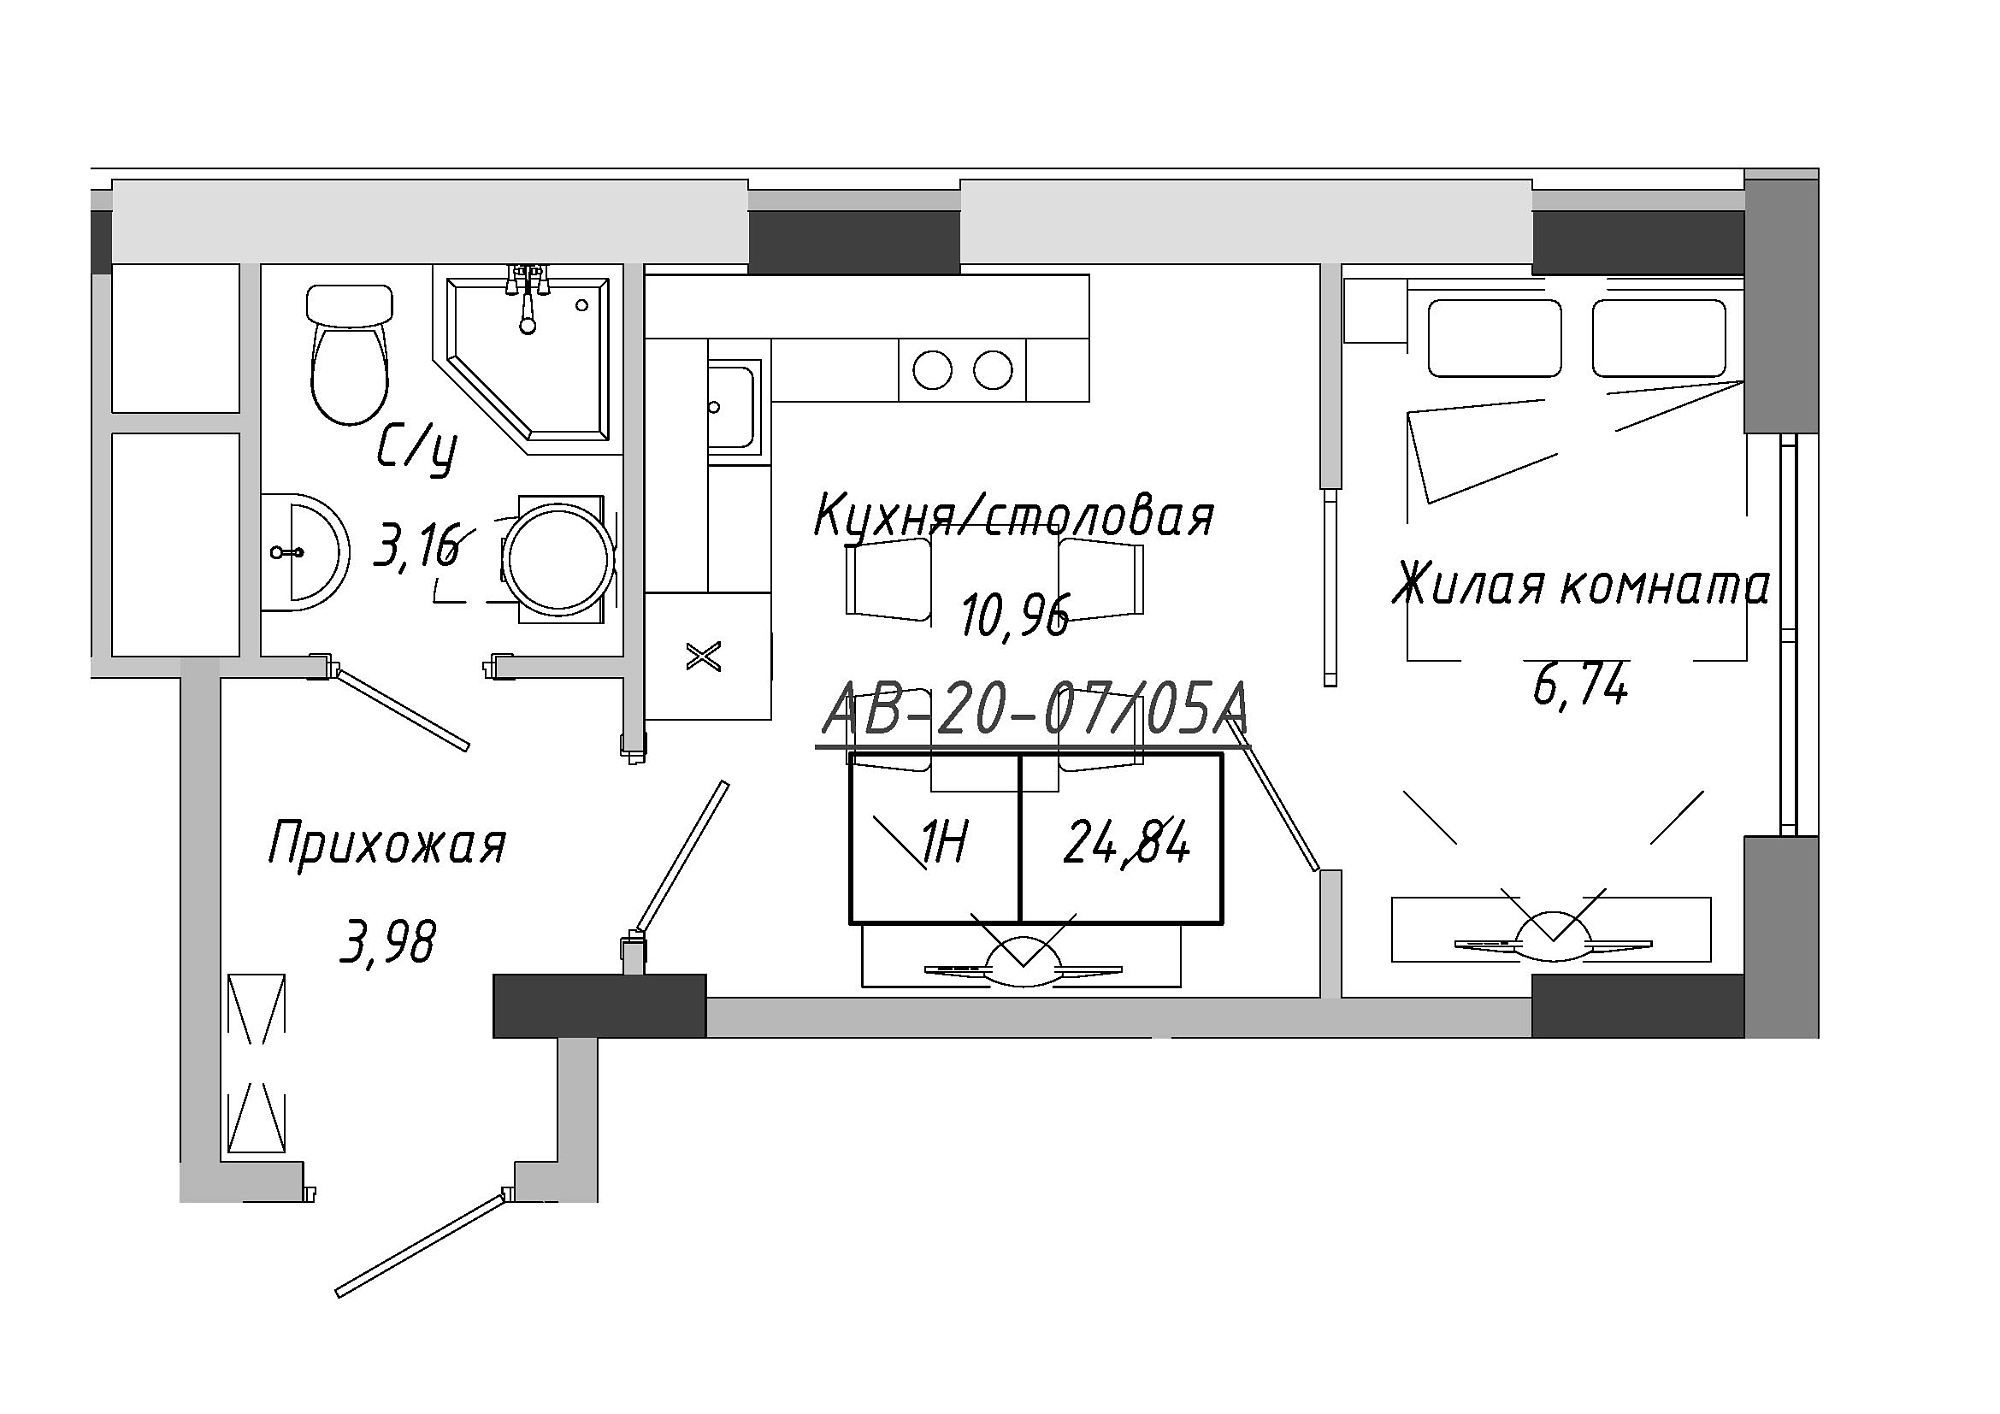 Планировка 1-к квартира площей 24.41м2, AB-20-07/0005а.